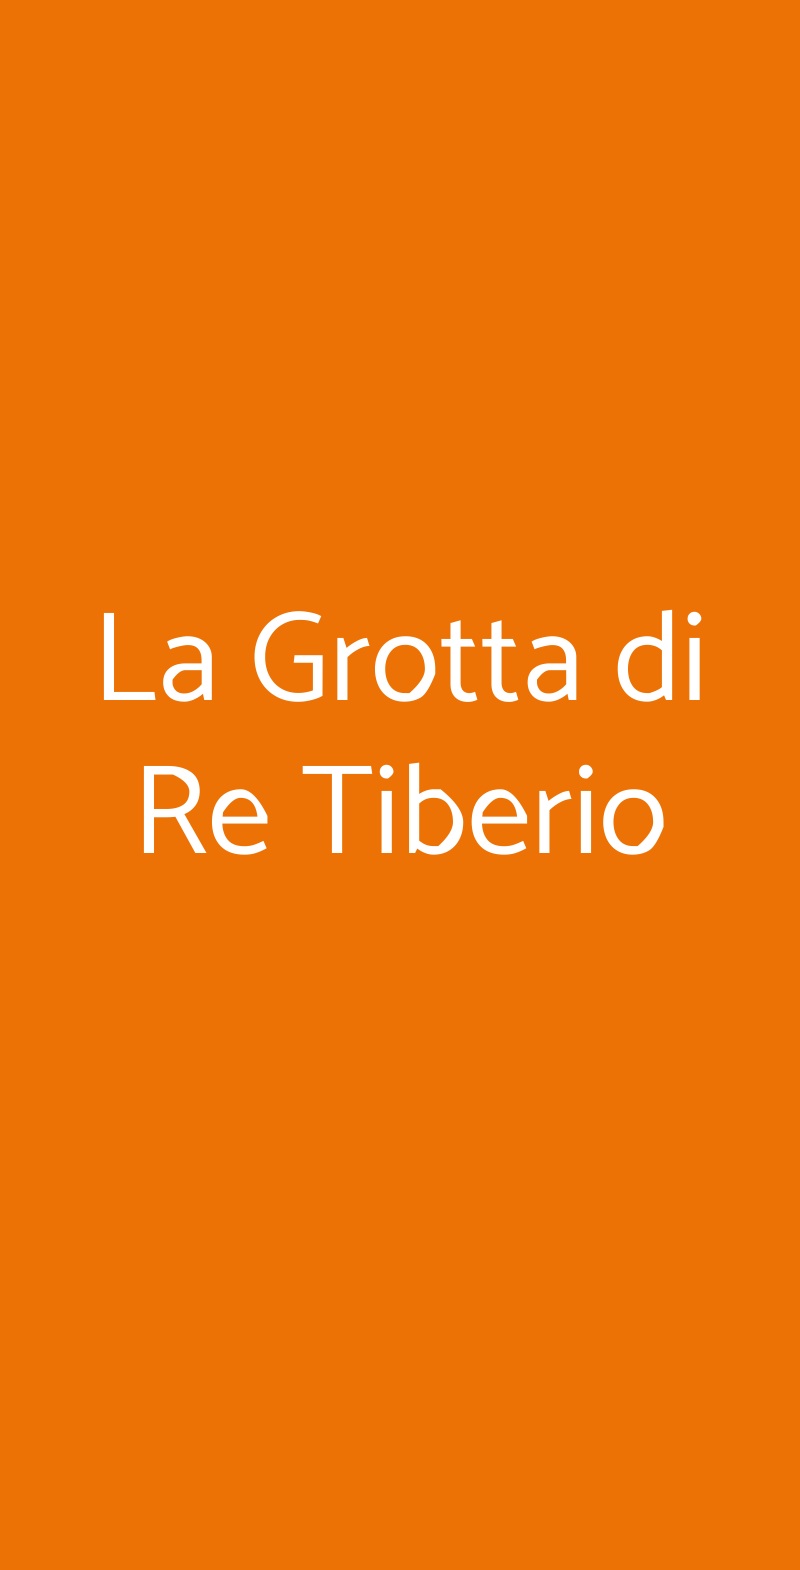 La Grotta di Re Tiberio Riolo Terme menù 1 pagina